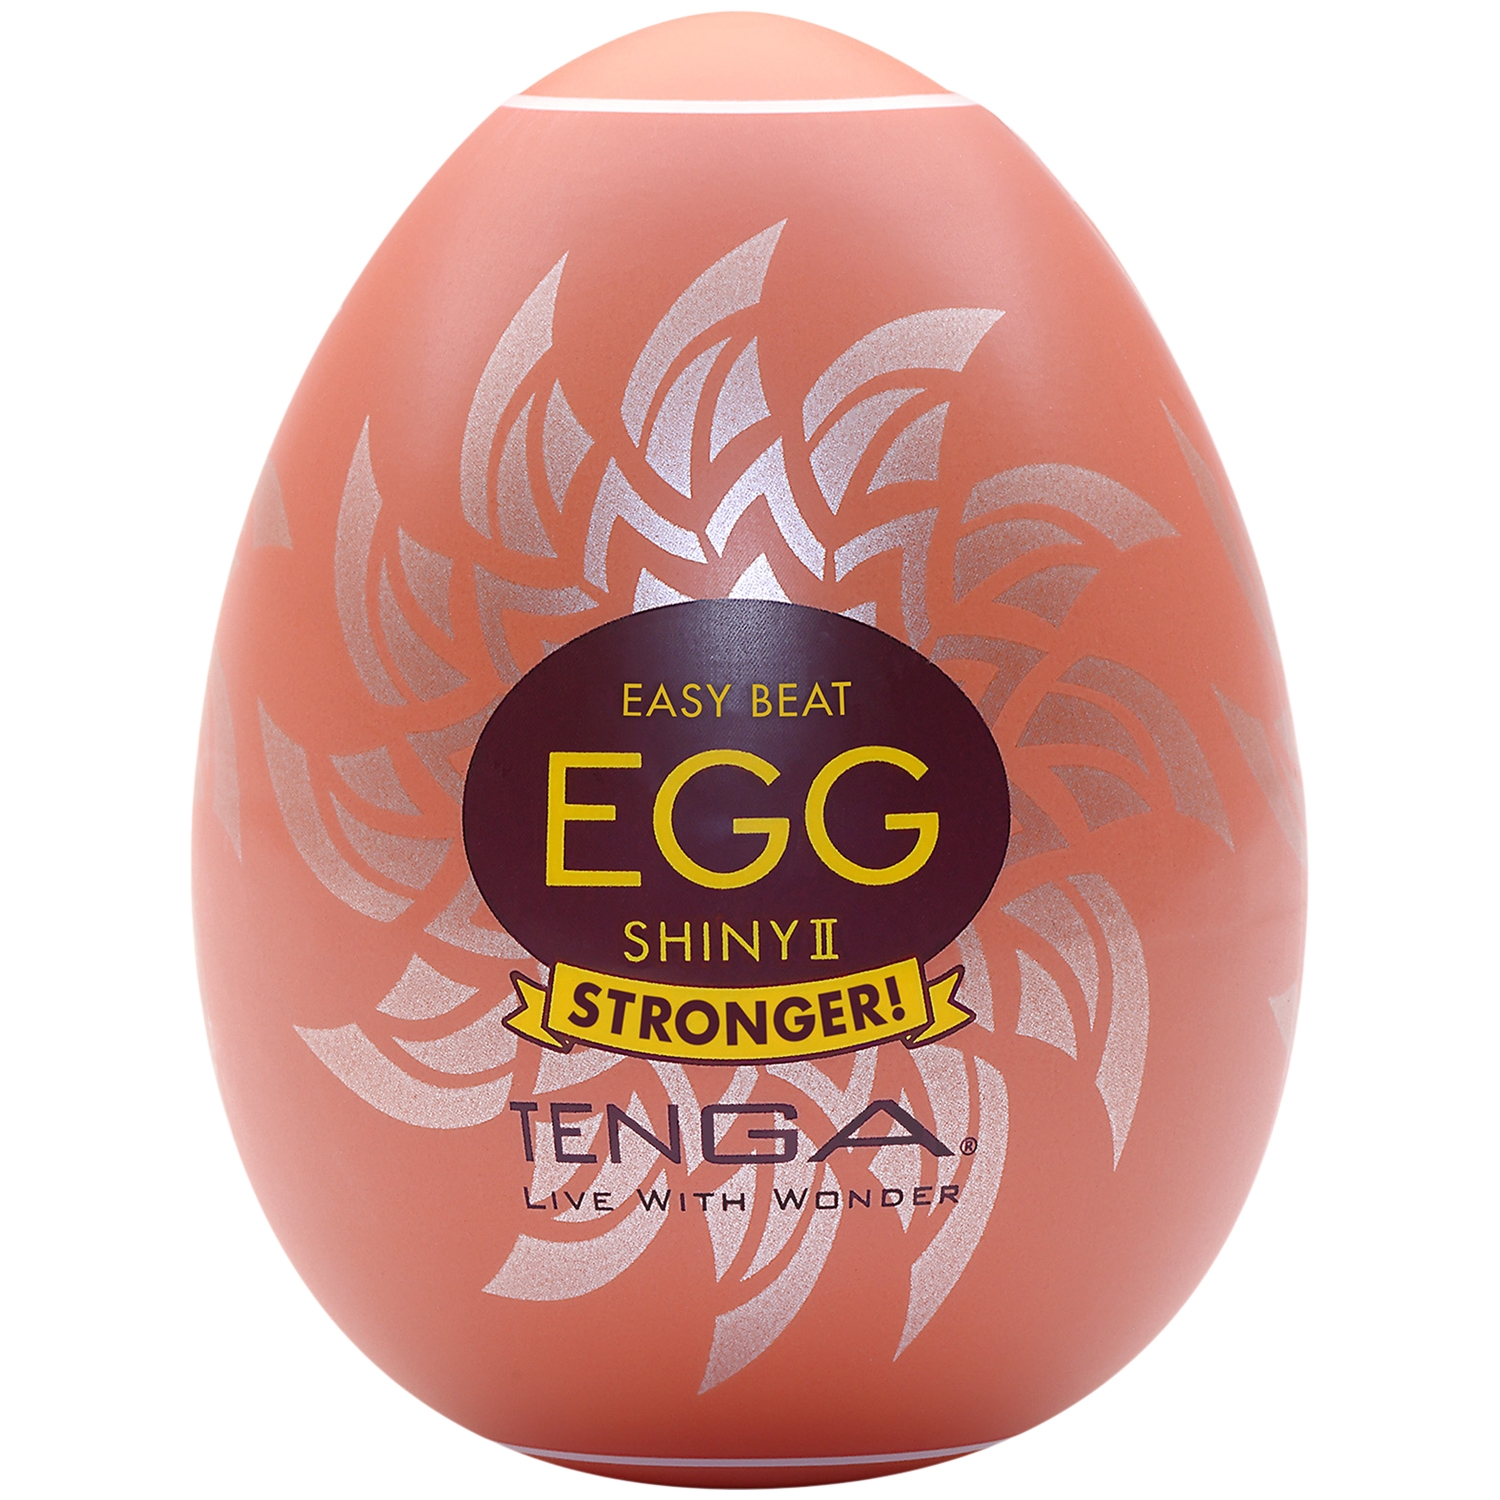 TENGA Egg Shiny II Onani Sleeve - Hvid